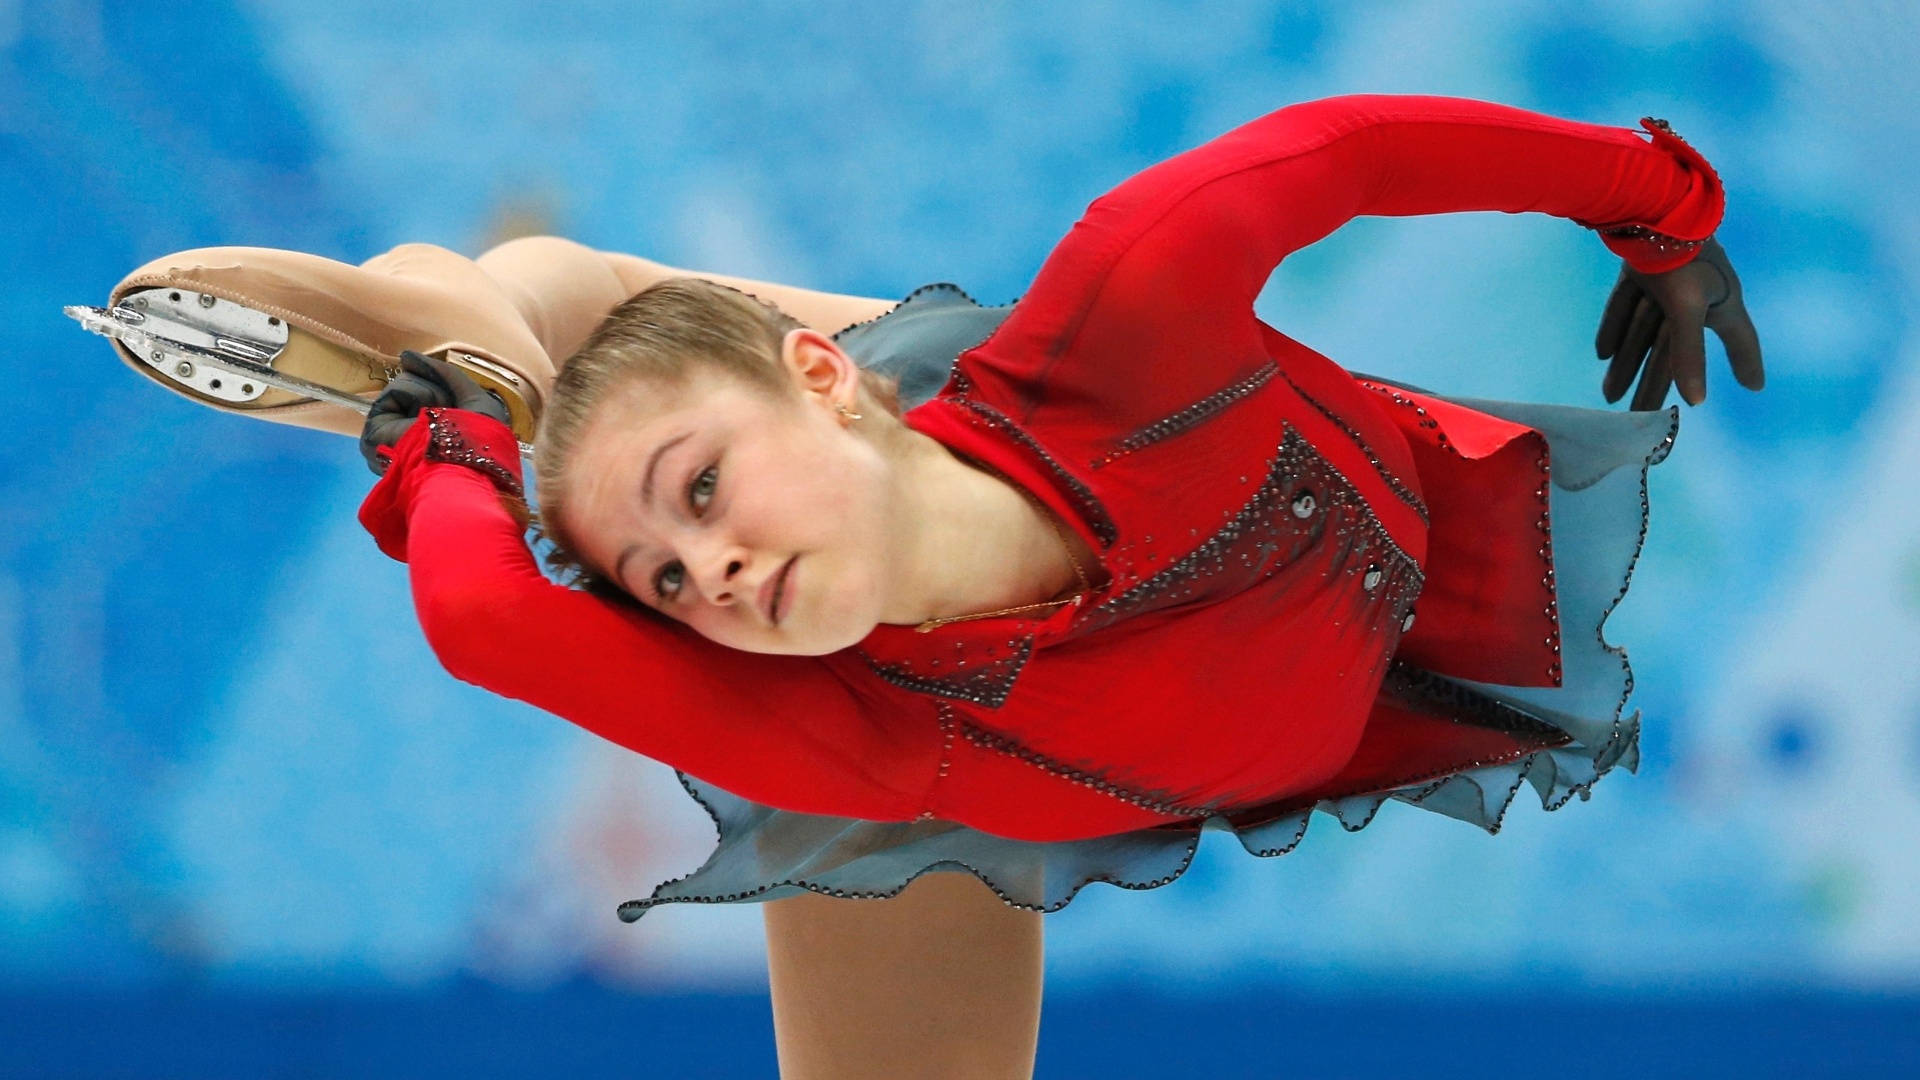 http://imguol.com/c/esporte/2014/02/12/russa-yulia-lipnitskaya-de-15-anos-medalha-de-ouro-no-ultimo-sabado-1392231750481_1920x1080.jpg